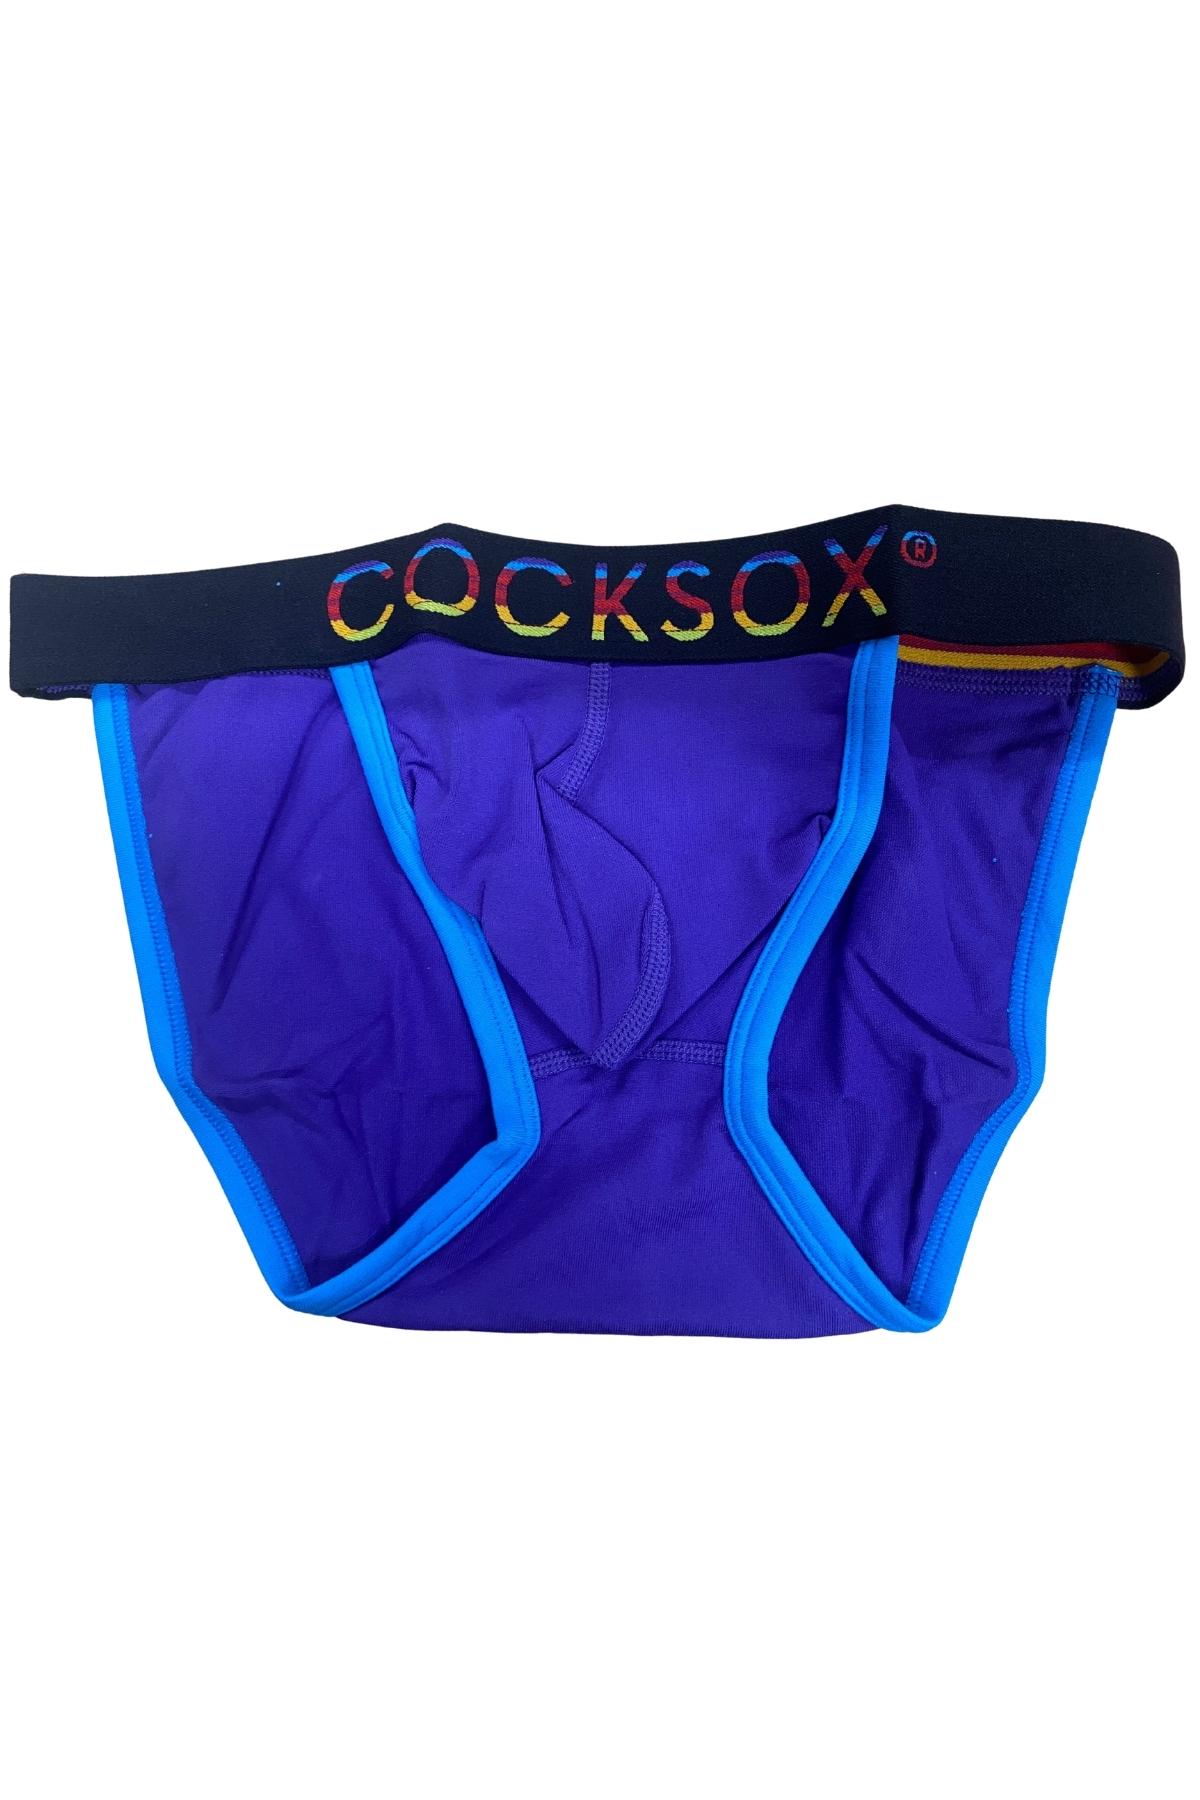 Cocksox Dusk CX16N Bikini Brief